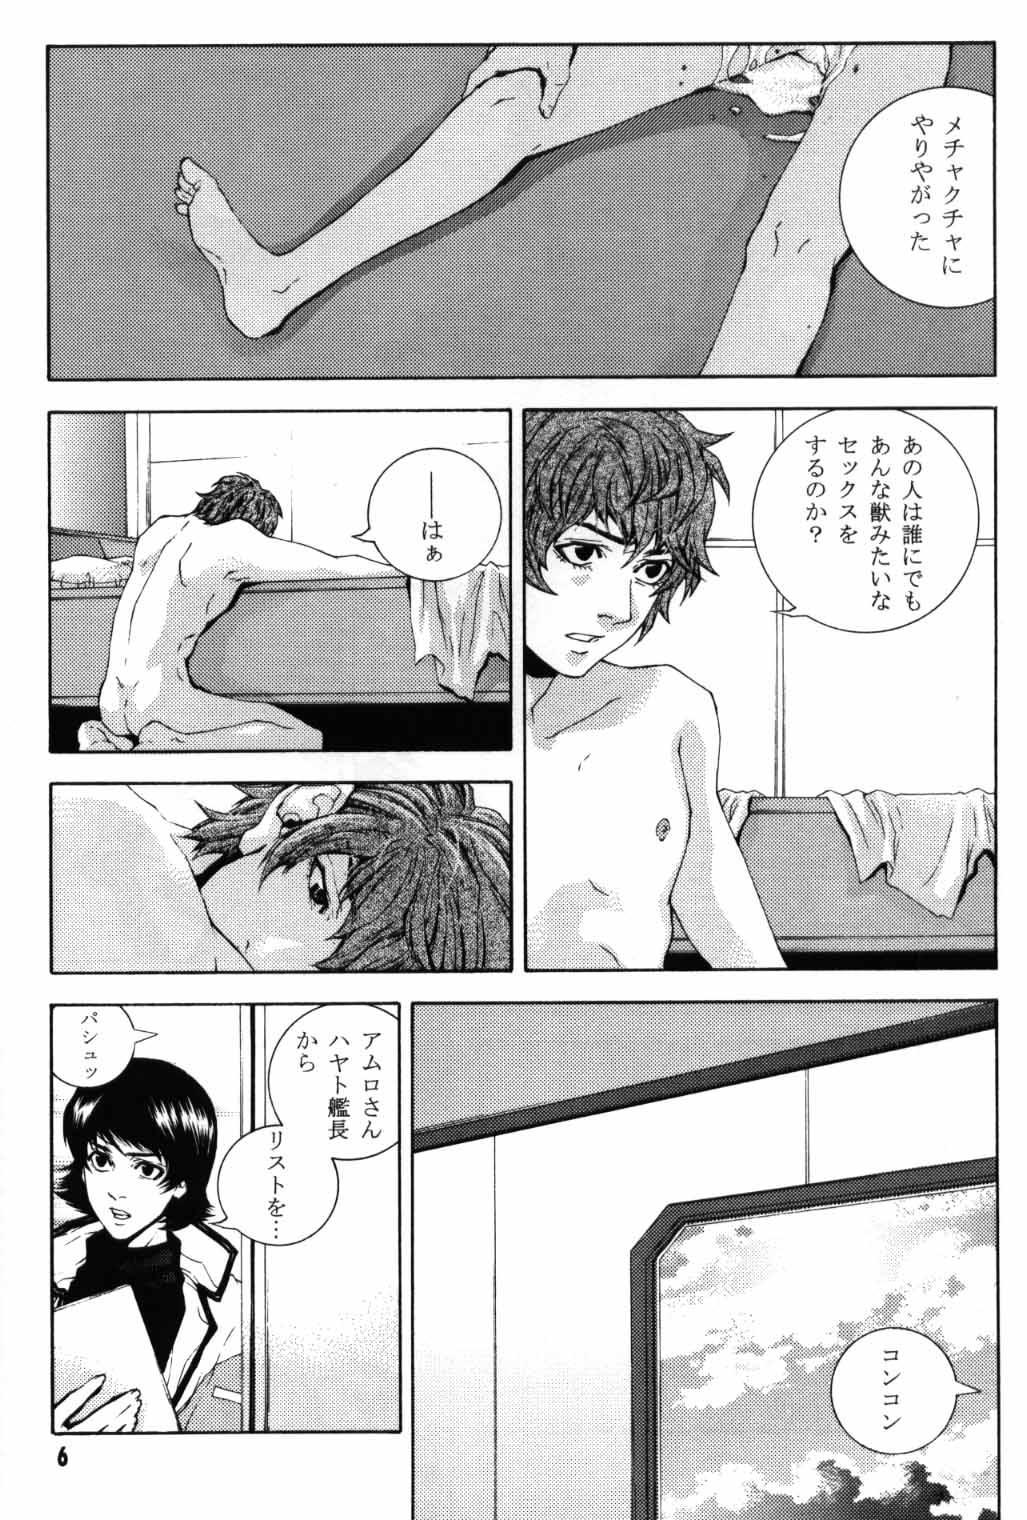 Rubia Koi no you na Bakemono ga. - Zeta gundam Gay Bang - Page 4